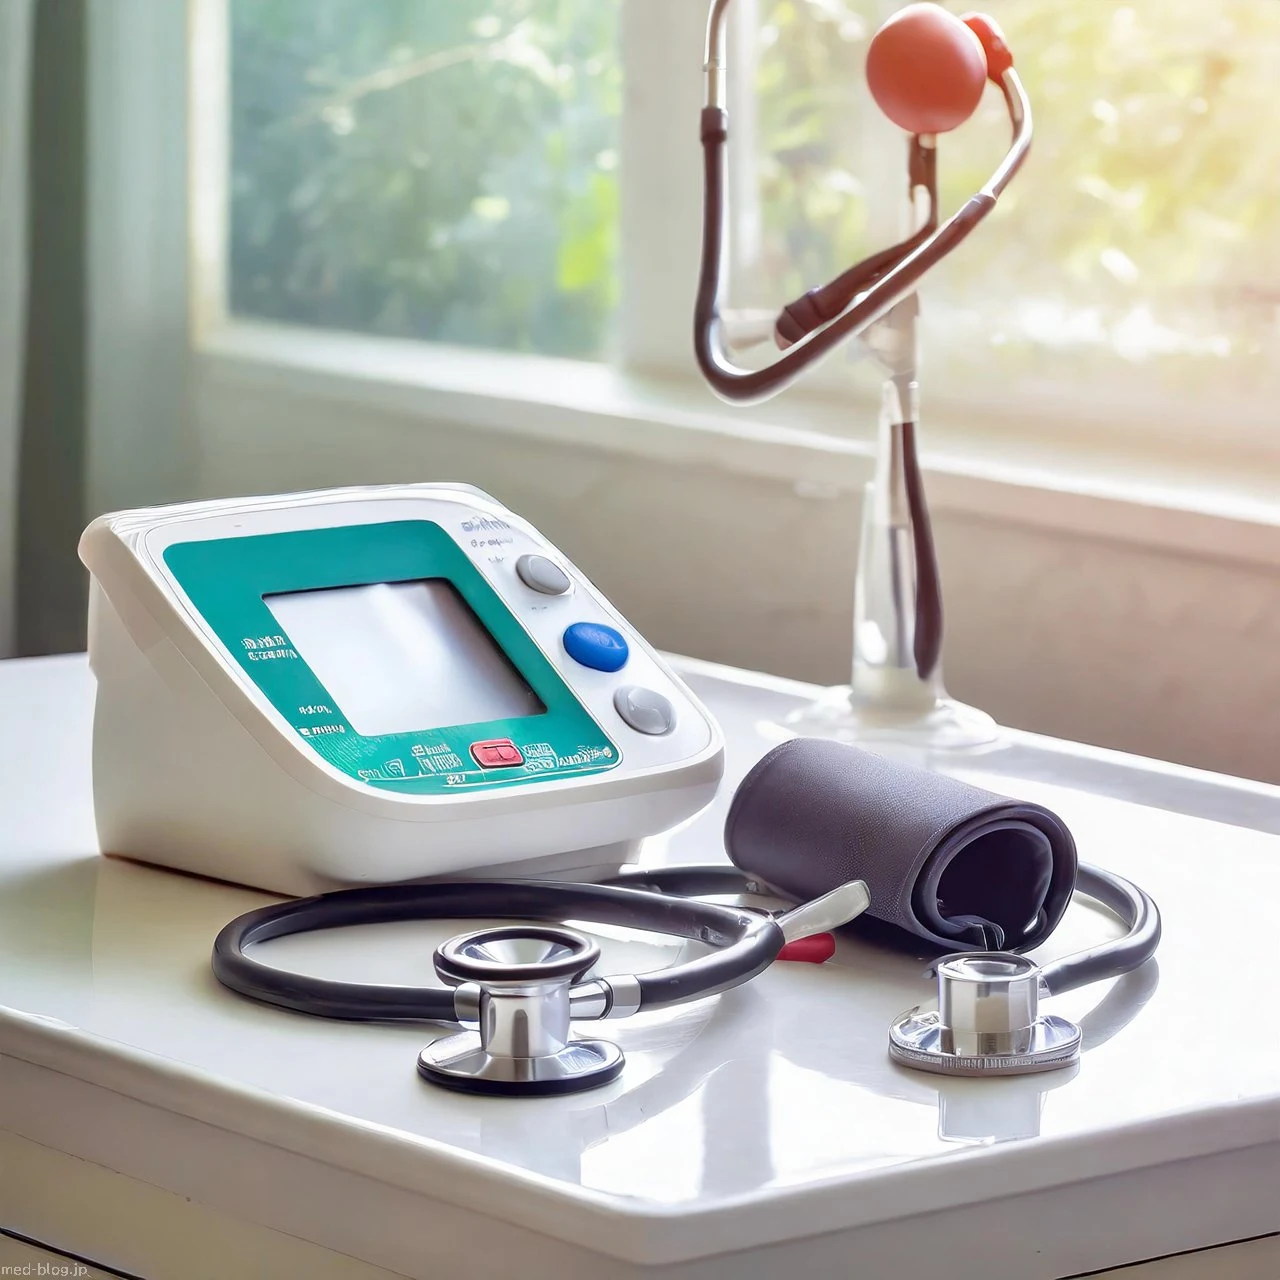 窓から光の入る明るい小さな診療所の診察室の白い机の上に、電子自動血圧計と聴診器が置いてある写真.jpg (1280×1280)